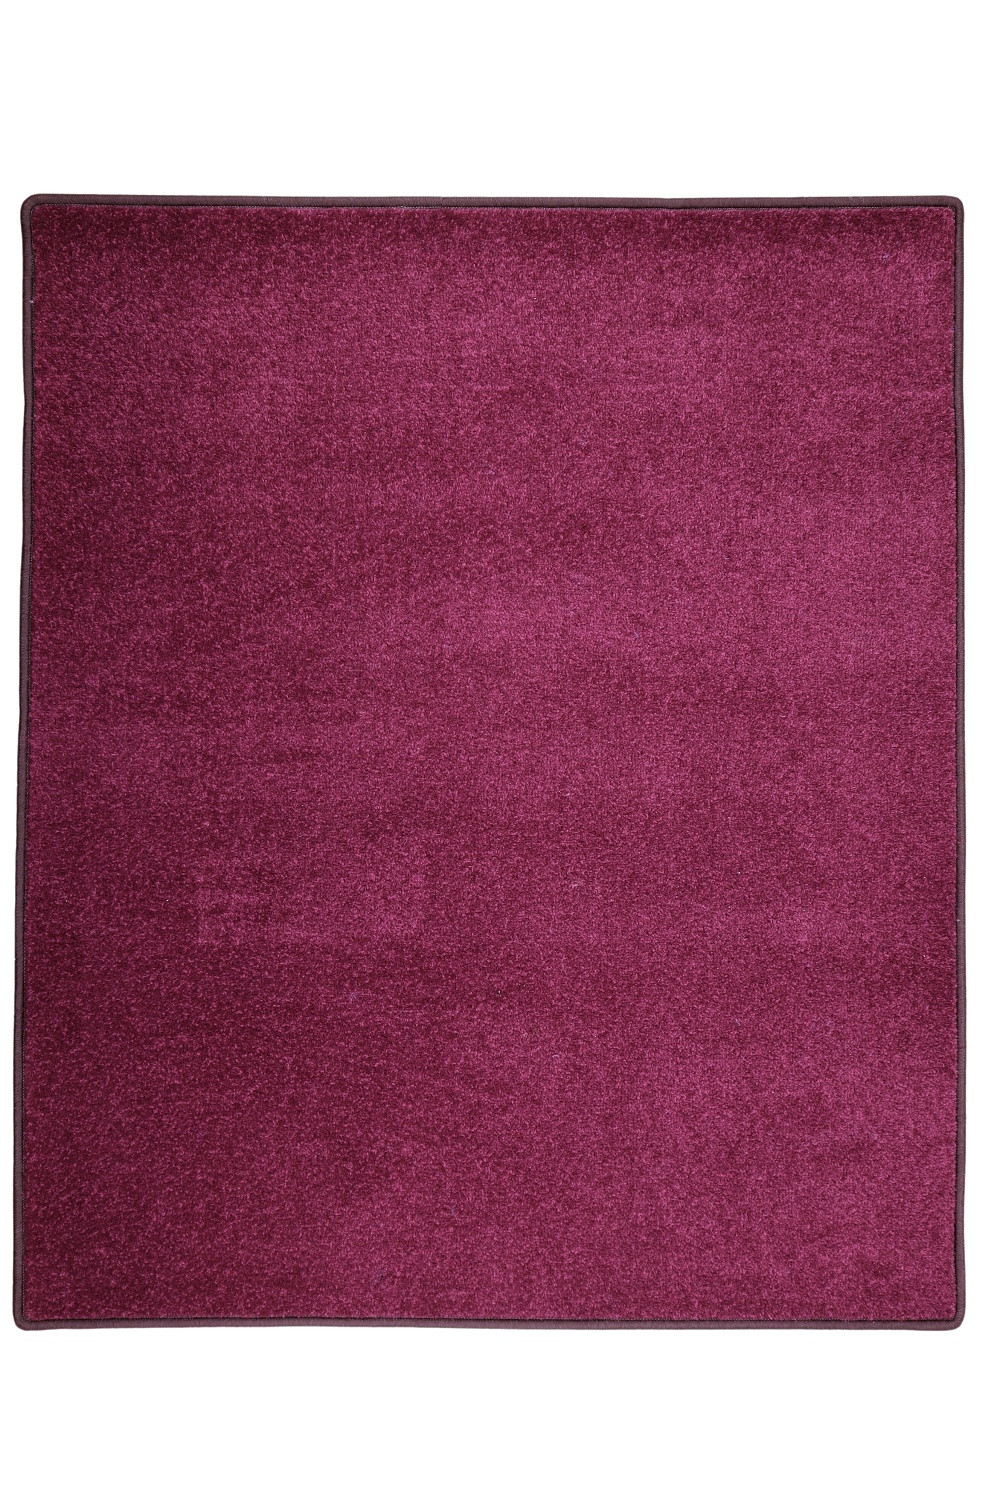 Kusový koberec Eton fialový 48 - 400x500 cm Vopi koberce 